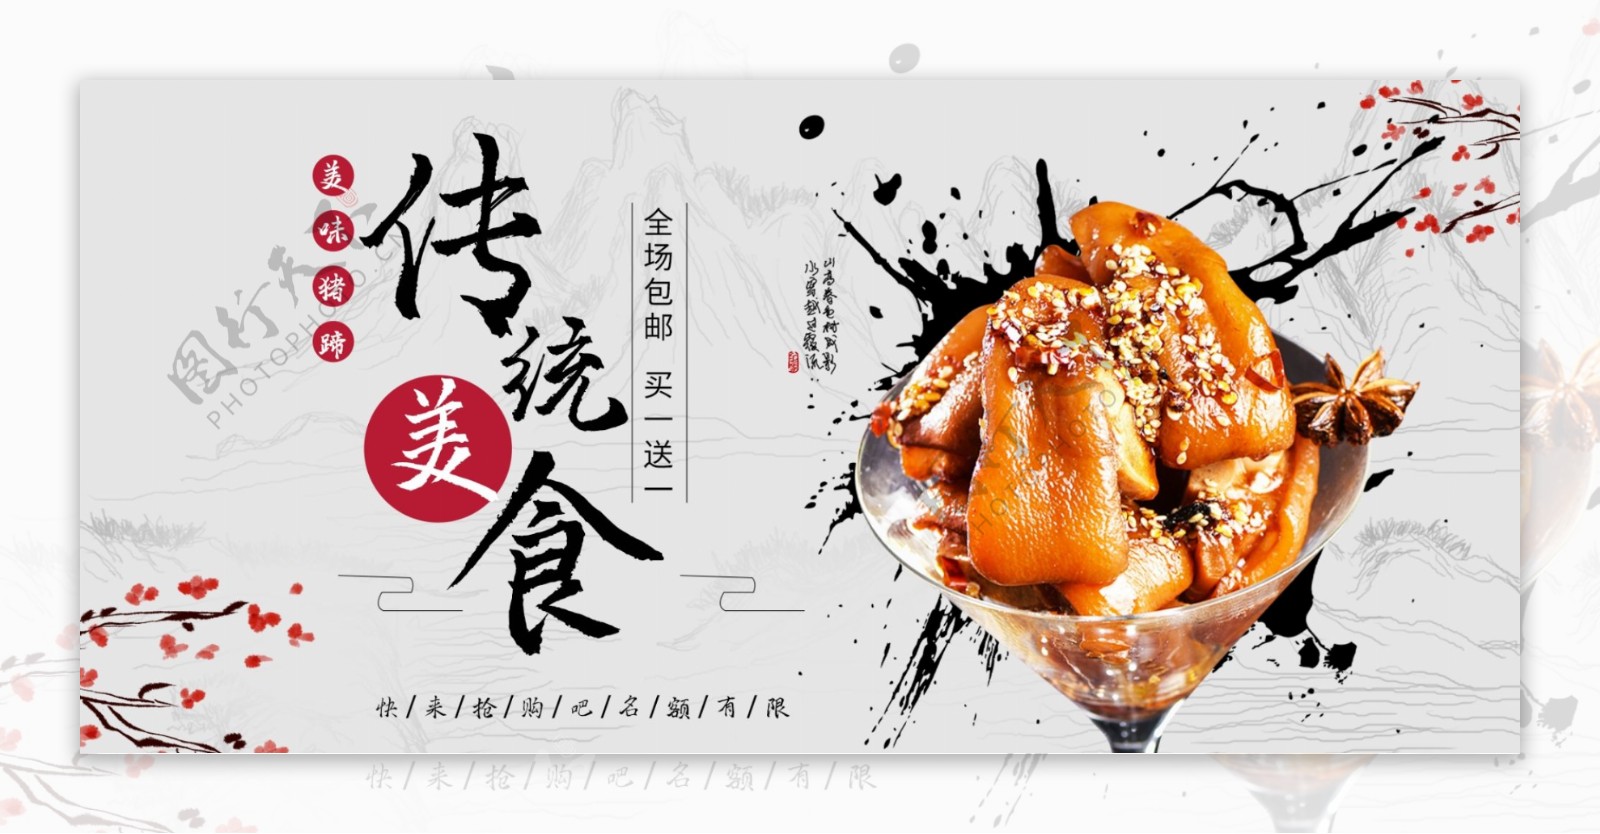 中国风美食猪蹄含产品海报设计